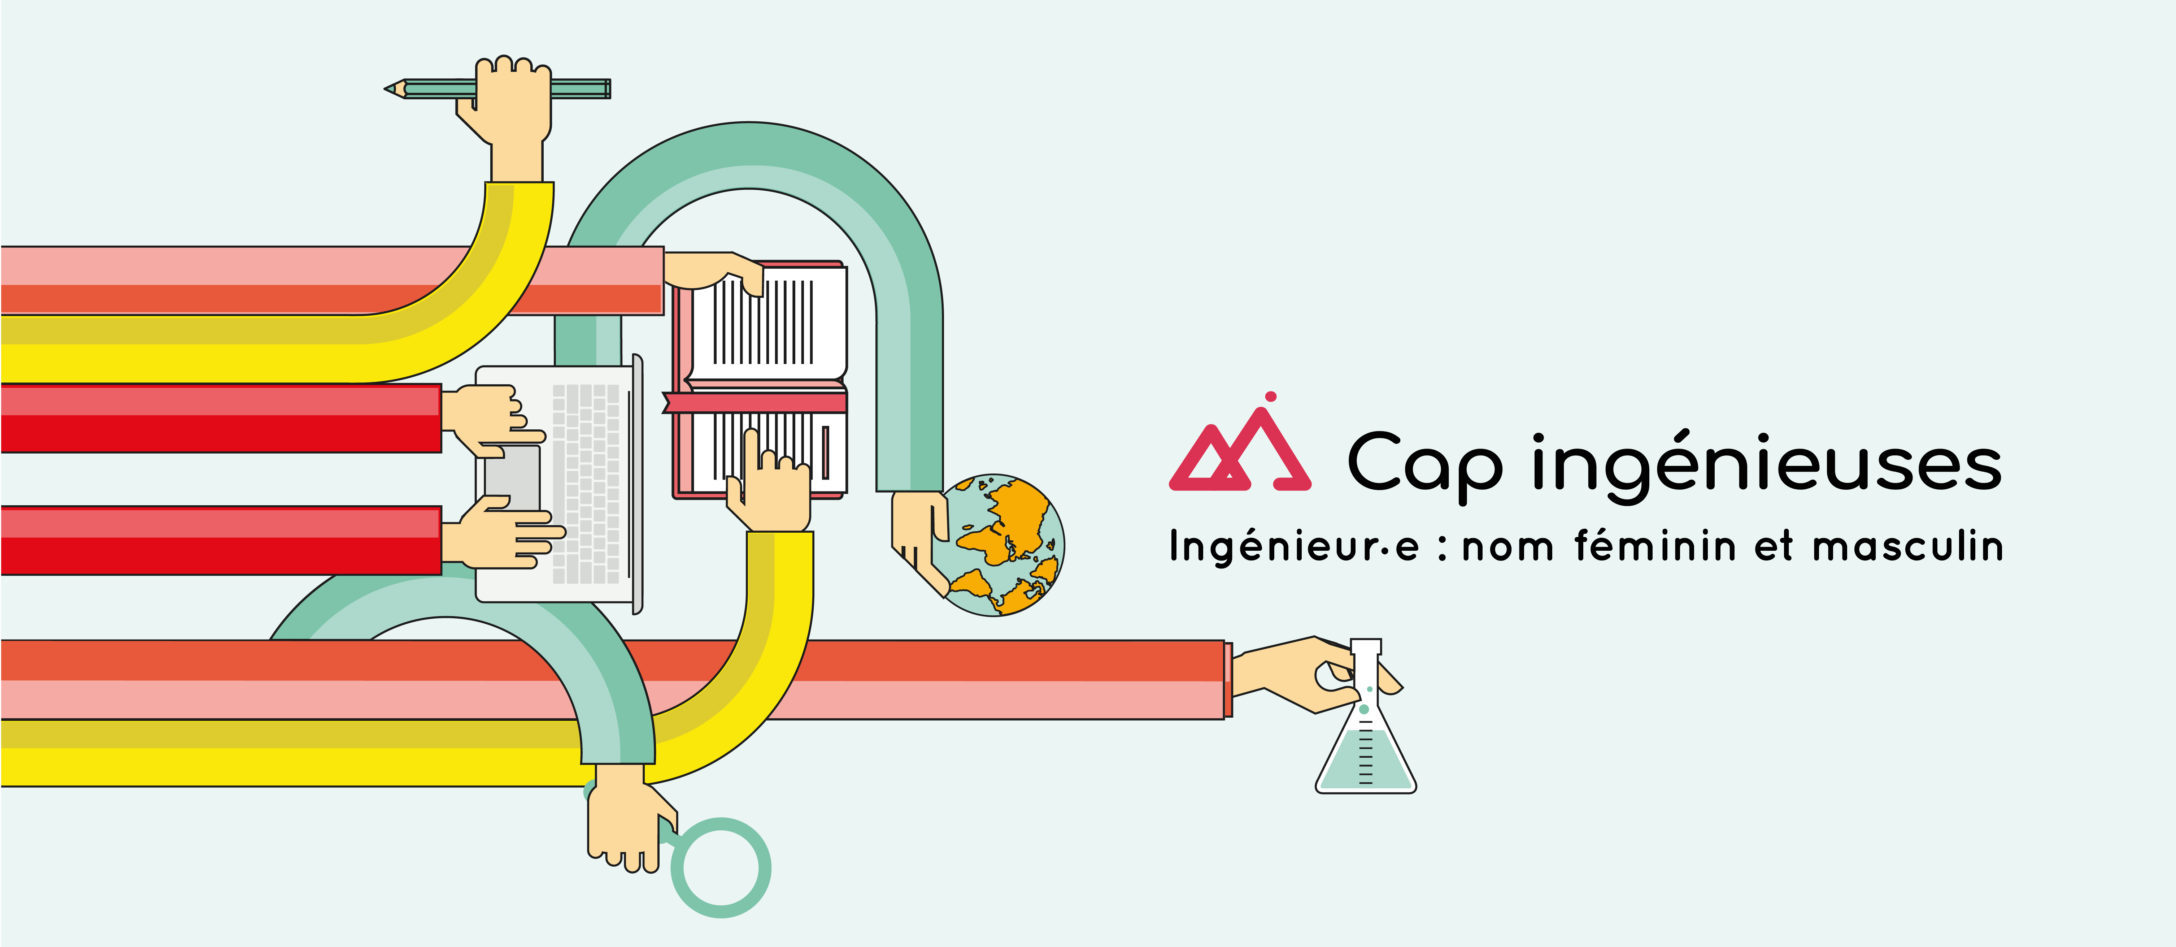 La CDEFI lance le label Cap Ingénieuses